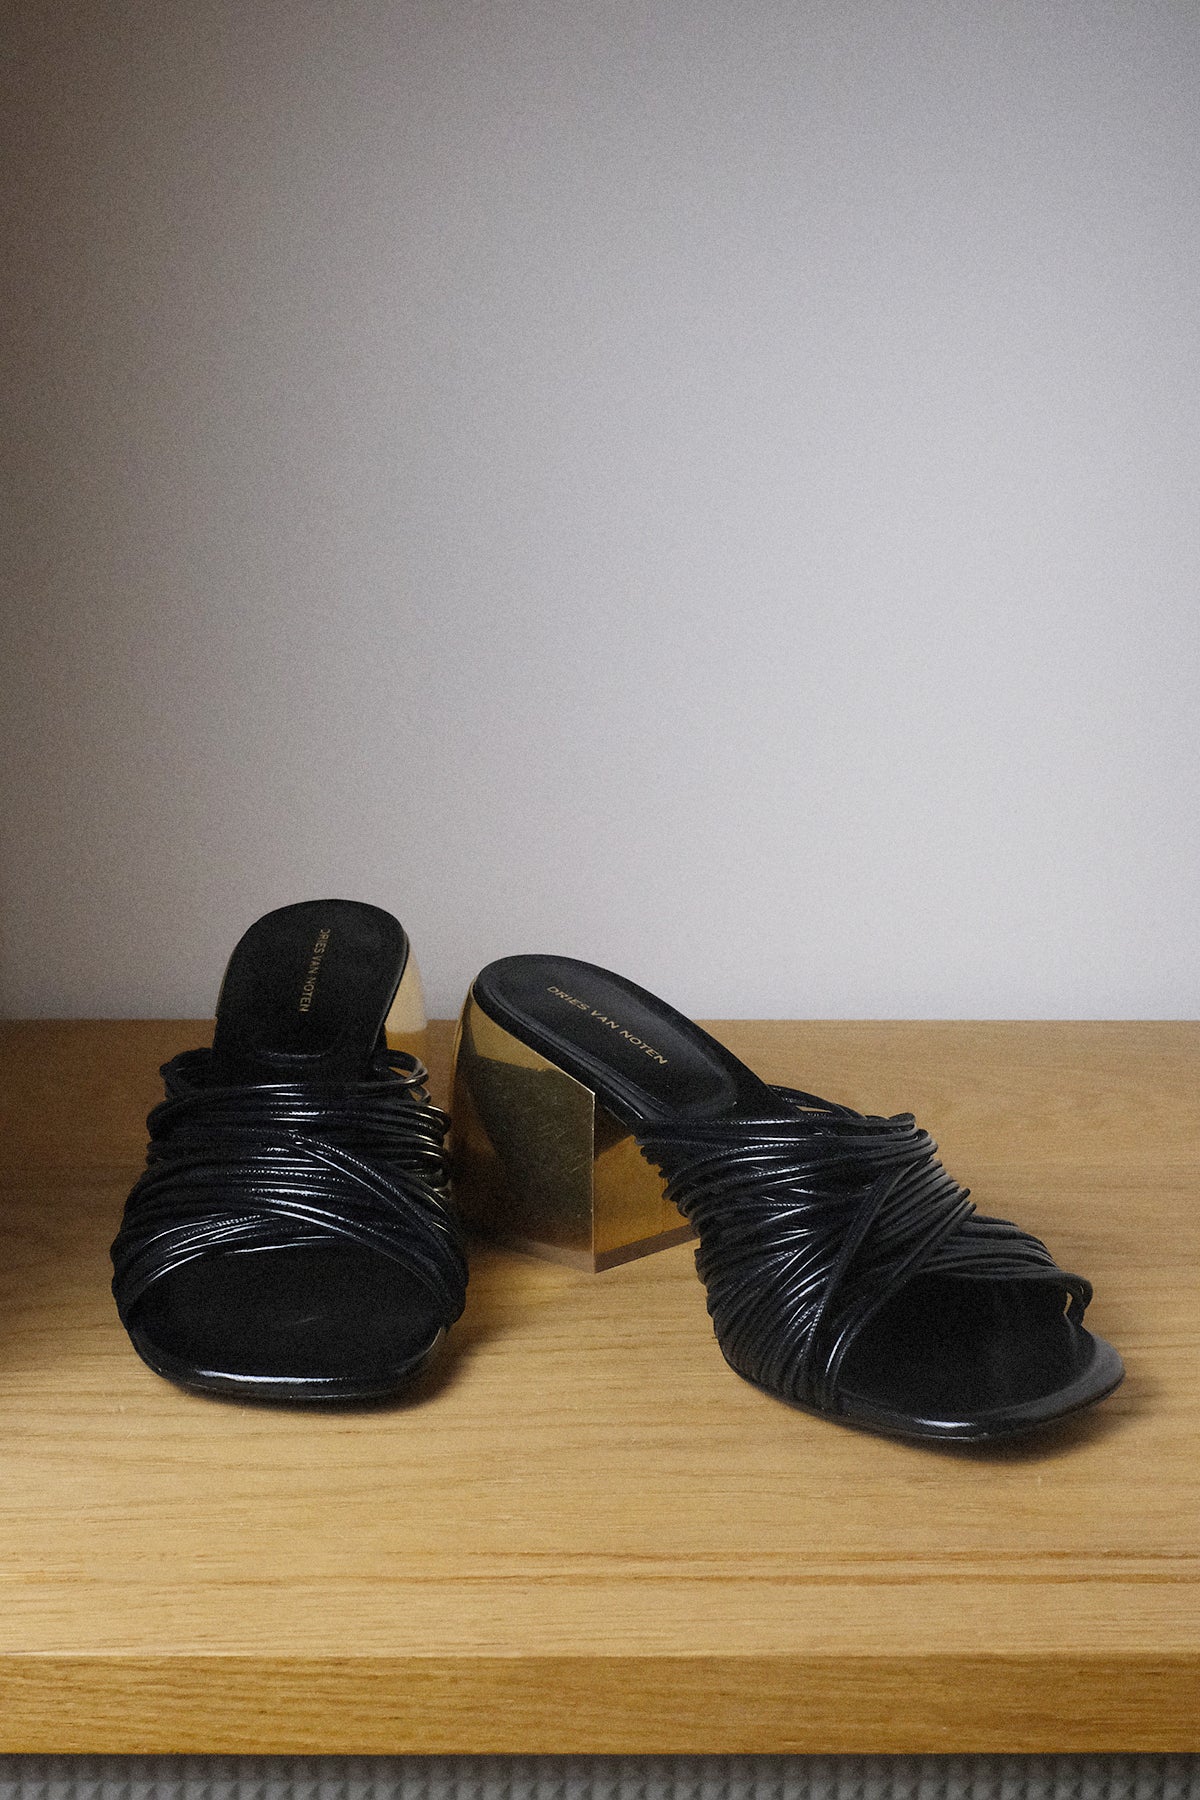 Dries van Noten — Sandals / Black